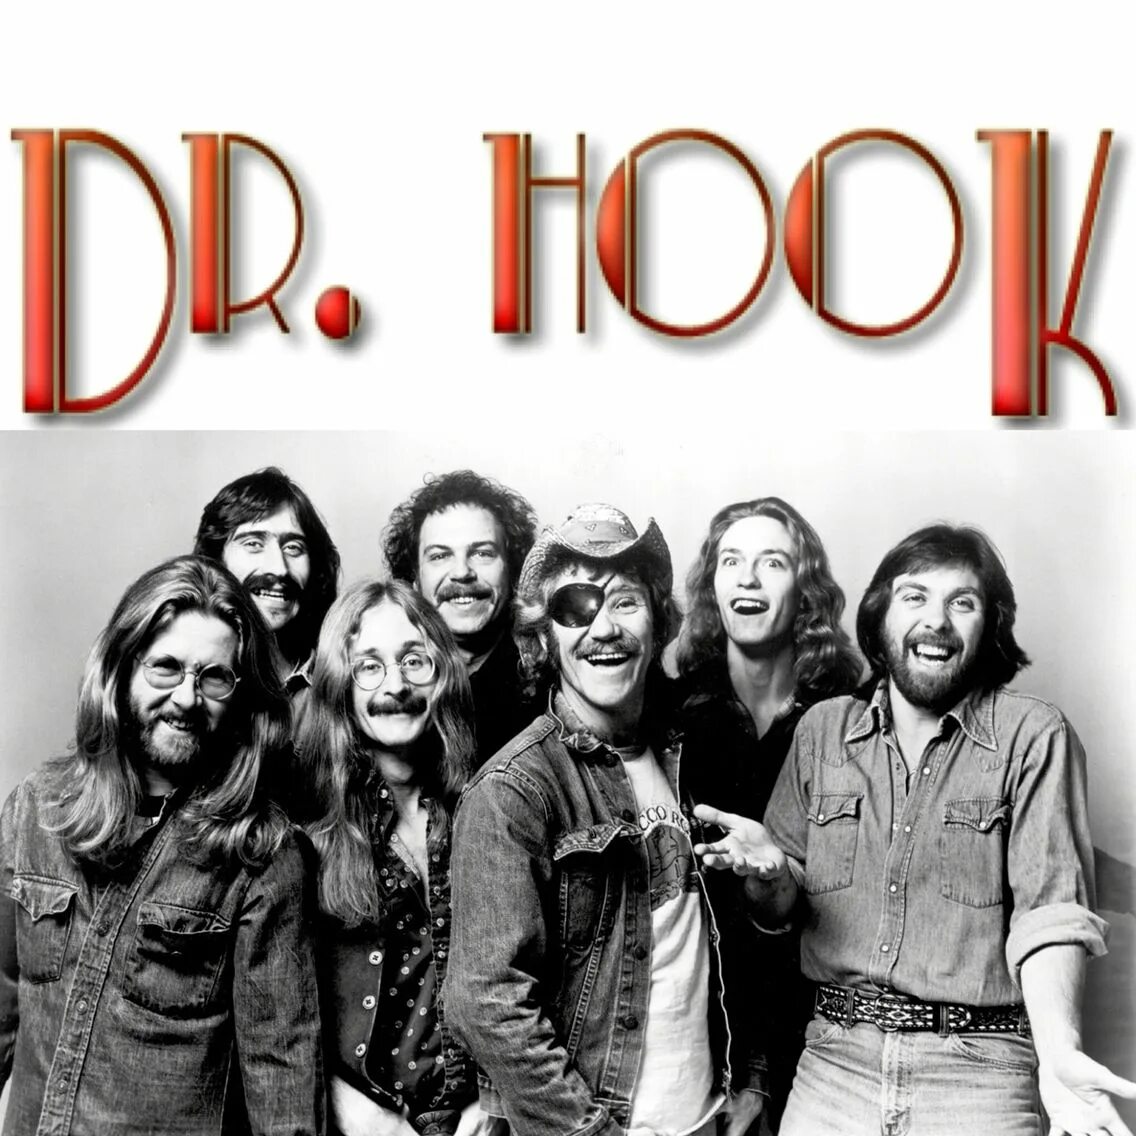 Dr. Hook. Dr. Hook CD. Dr Hook albums. Группа Dr. Hook & the Medicine show альбомы. Classic master